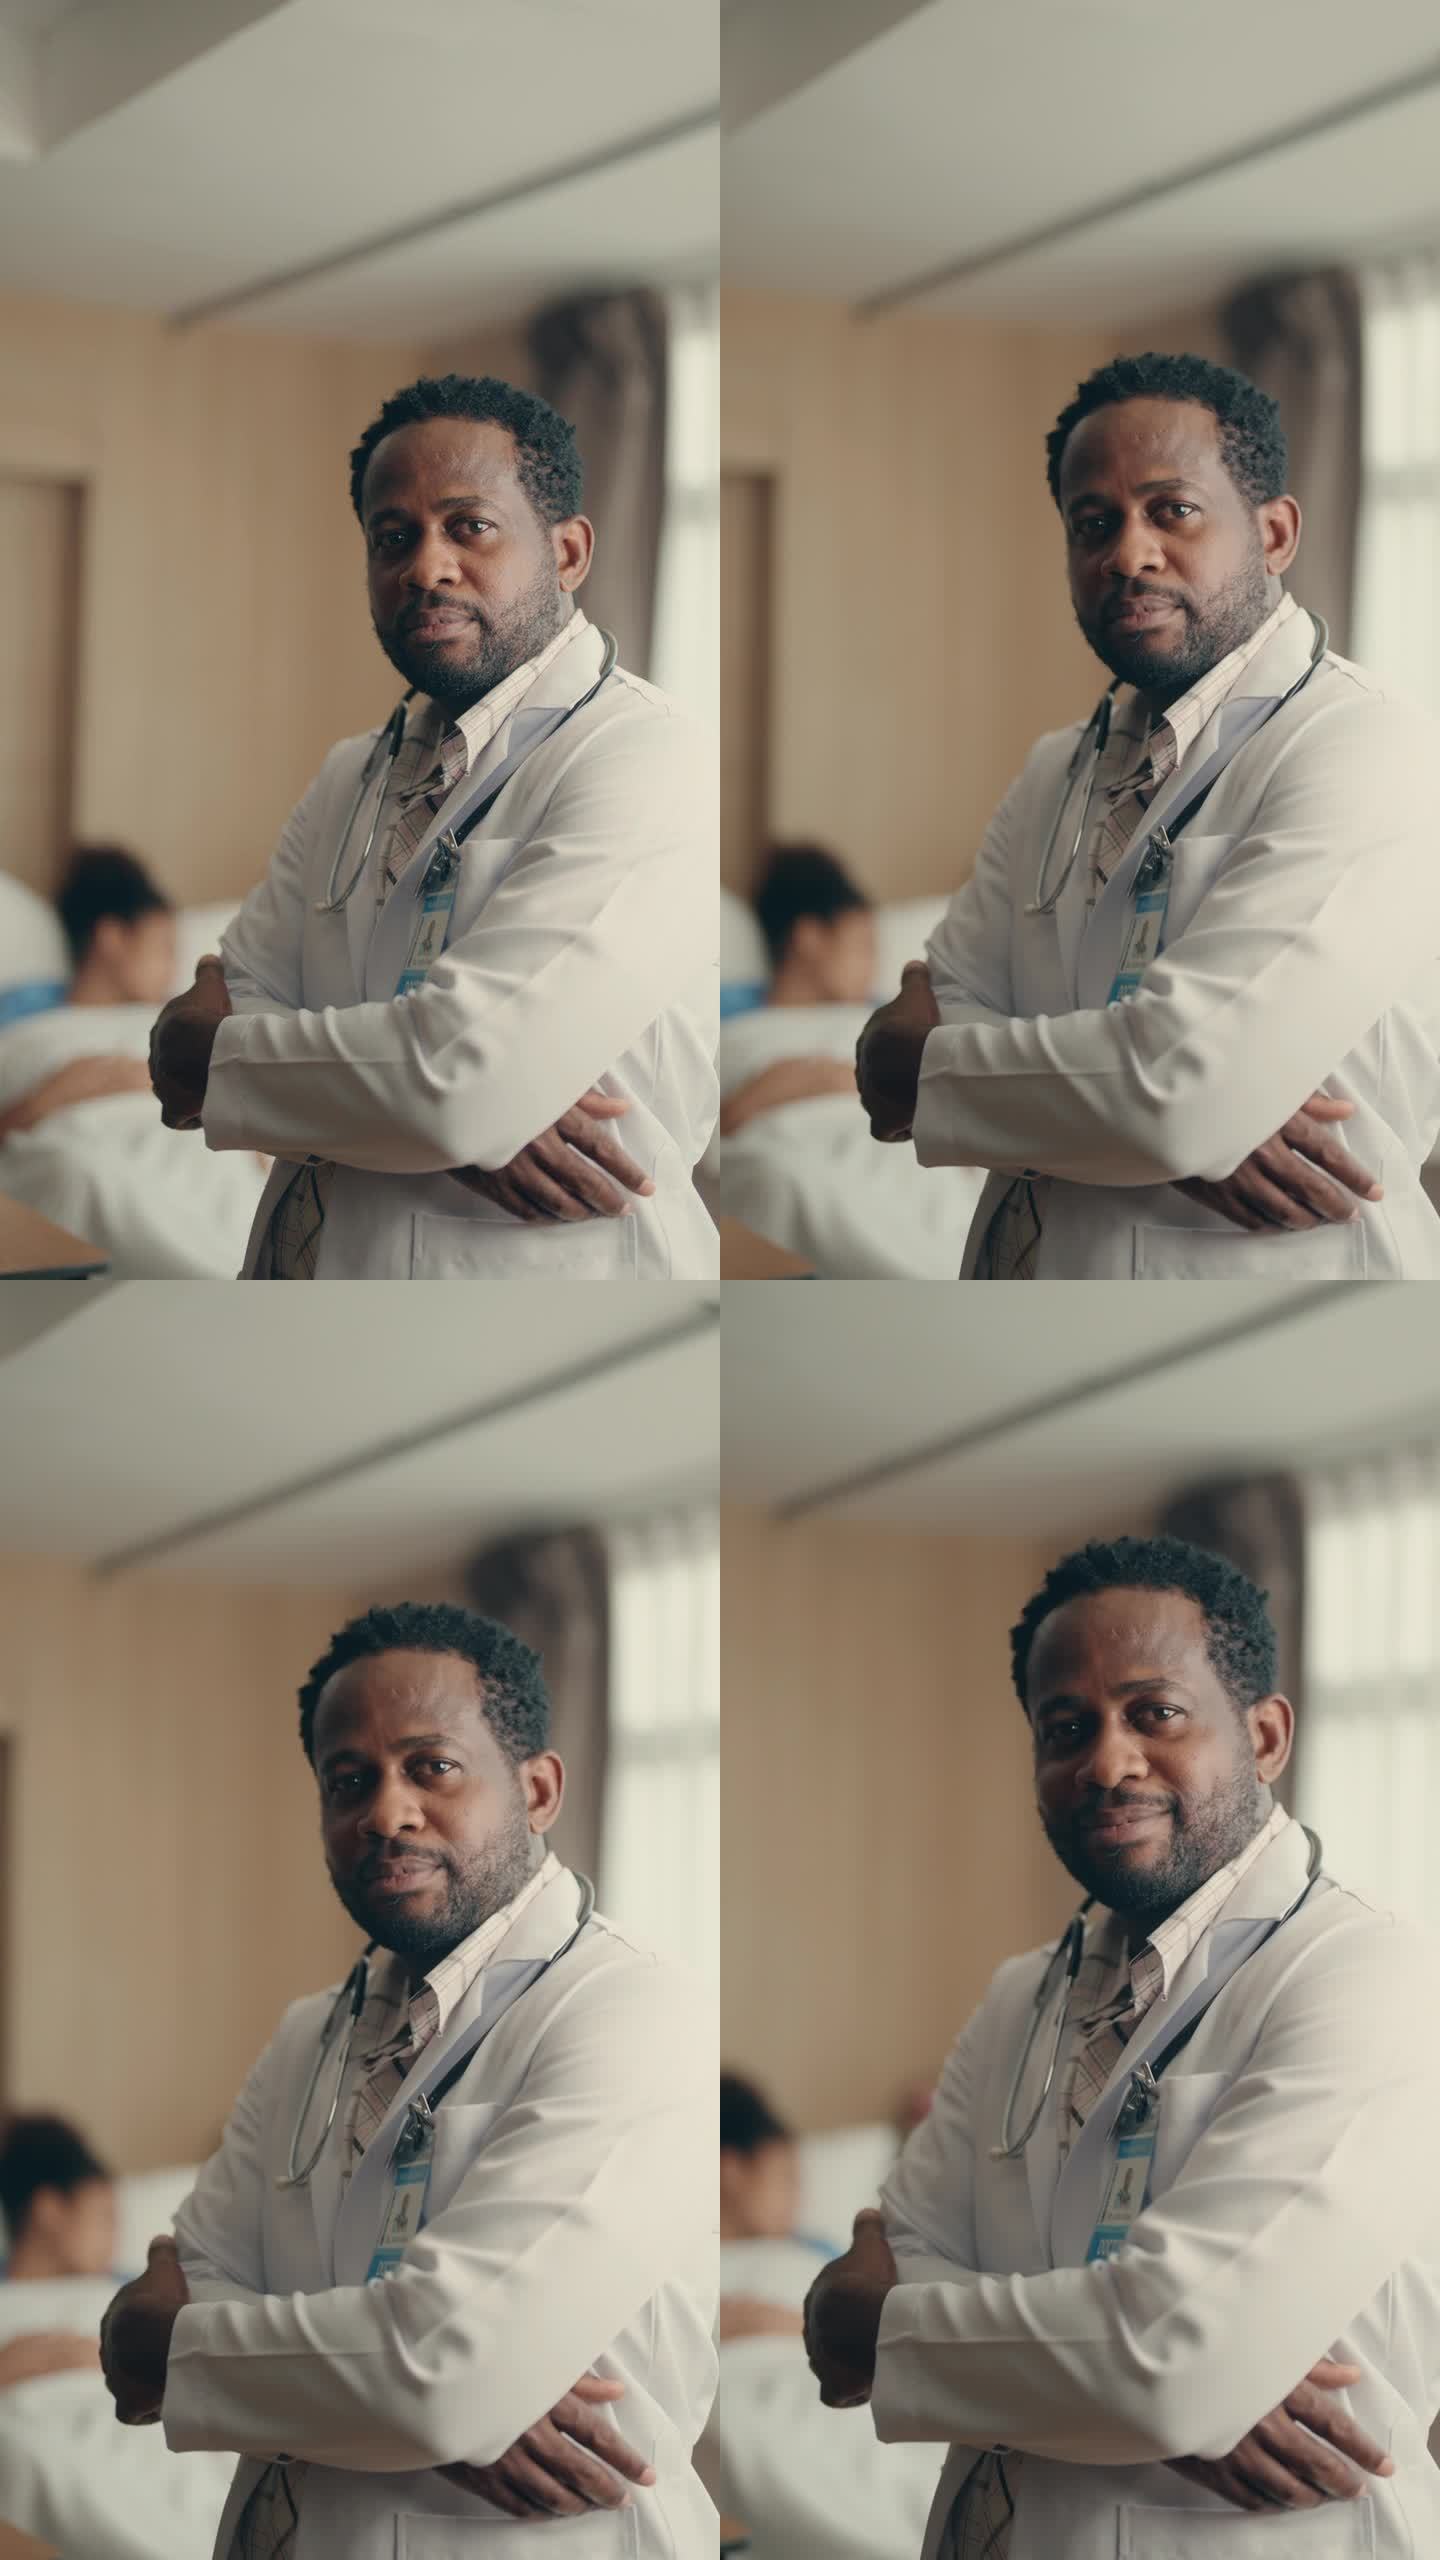 经验丰富的非洲医生在医院设置。成熟的医疗保健专业人员的肖像与值得信赖的风度。